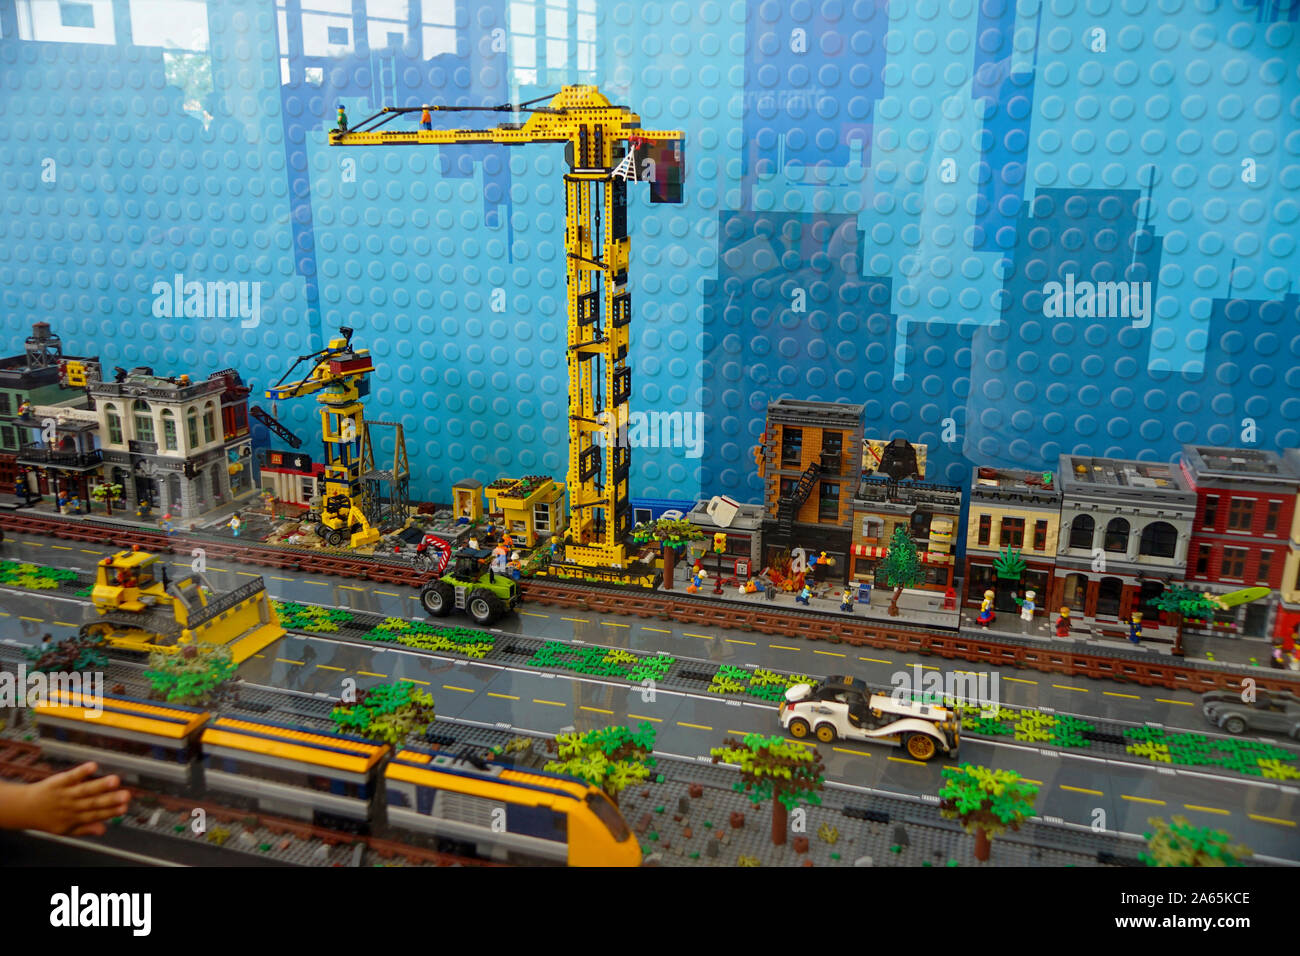 City scene à partir de blocs de construction Lego à l'Holon Children's  Museum. Holon, Israël Photo Stock - Alamy